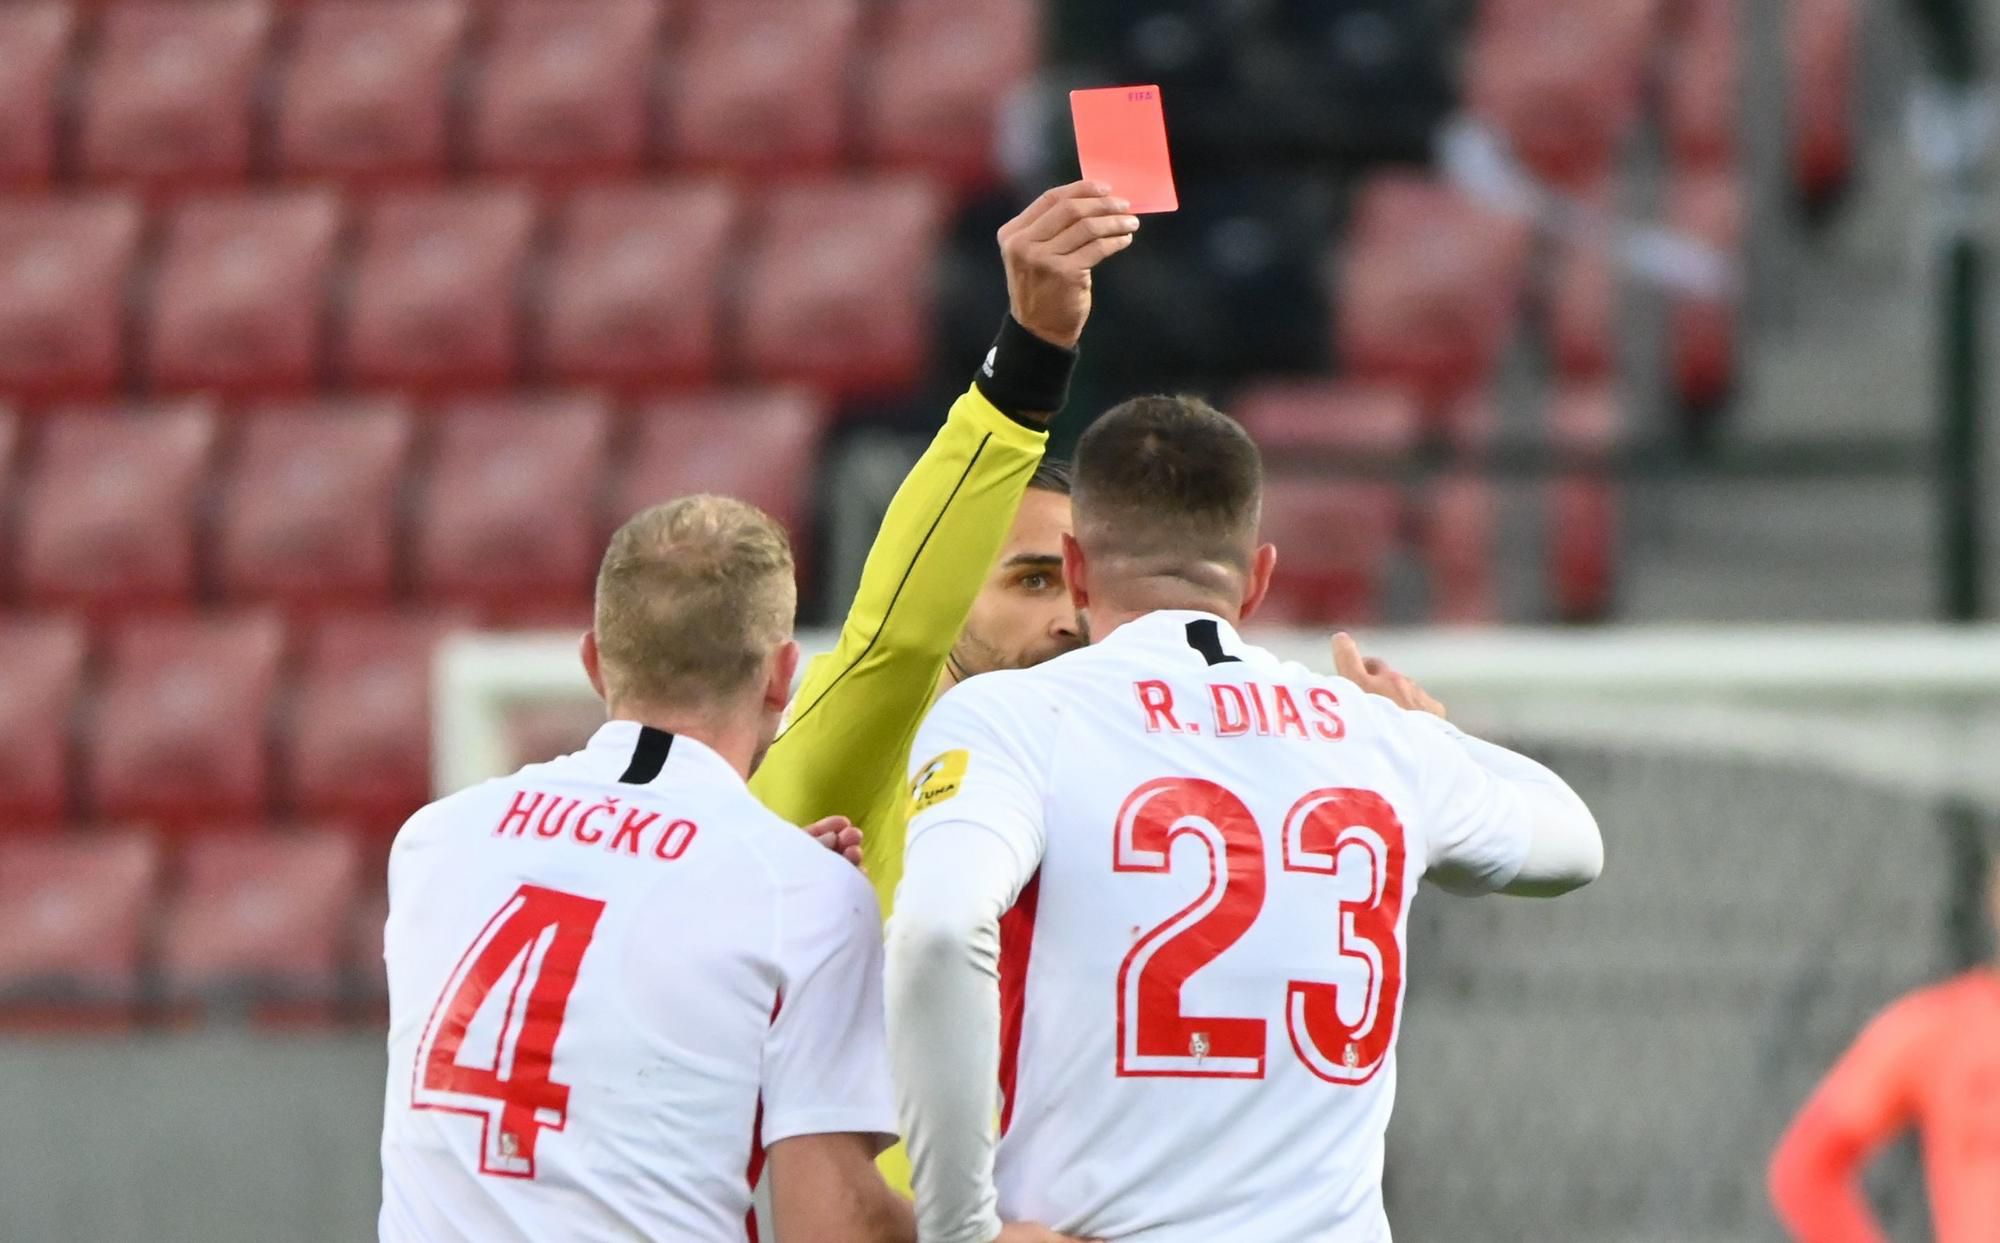 Tomáš Hučko, Roberto Dias a rozhodca Filip Glova s červenou kartou, ŠKF Sereď